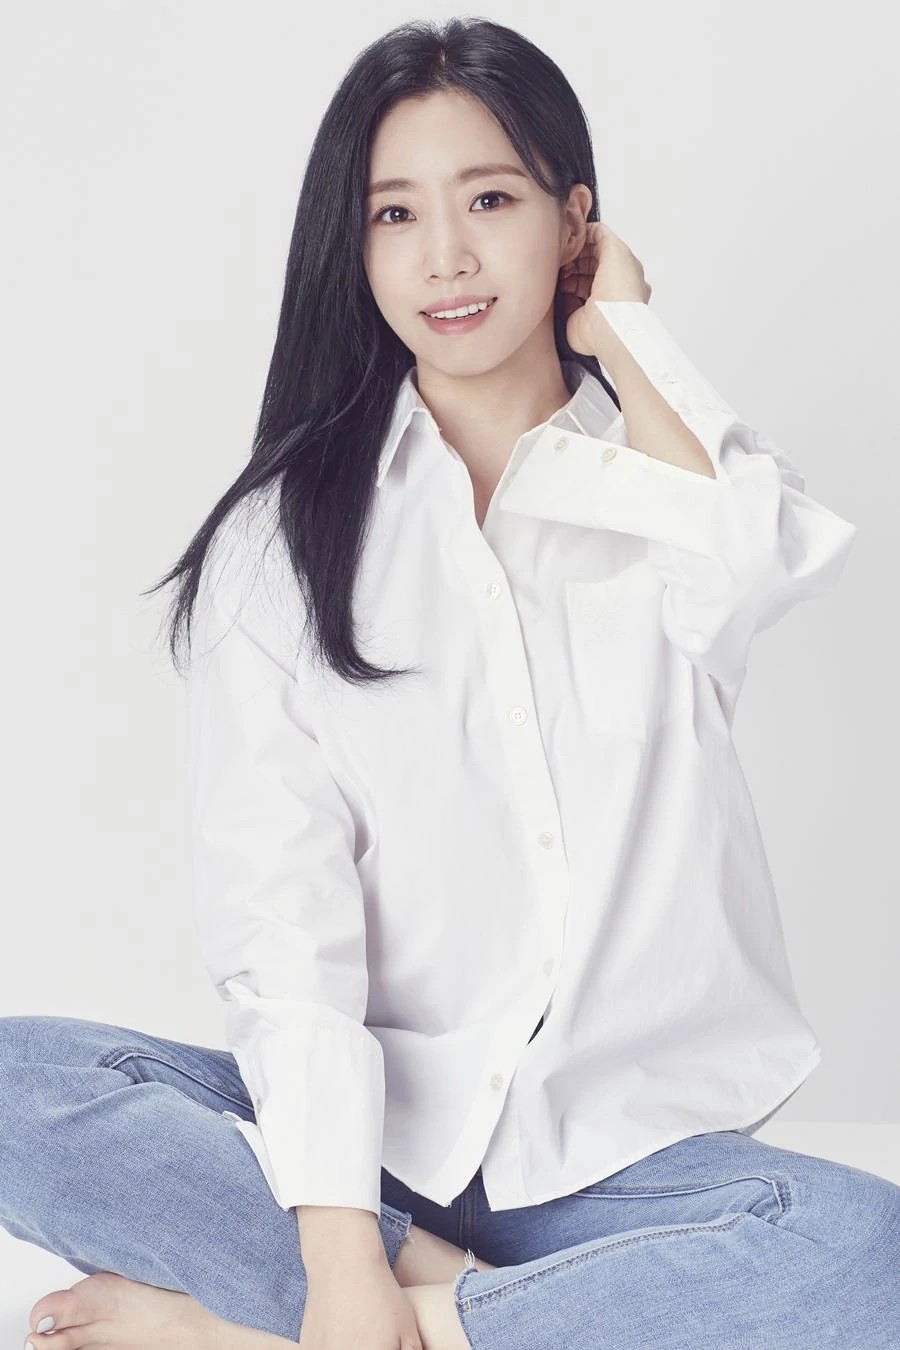 Ham Eun-jung